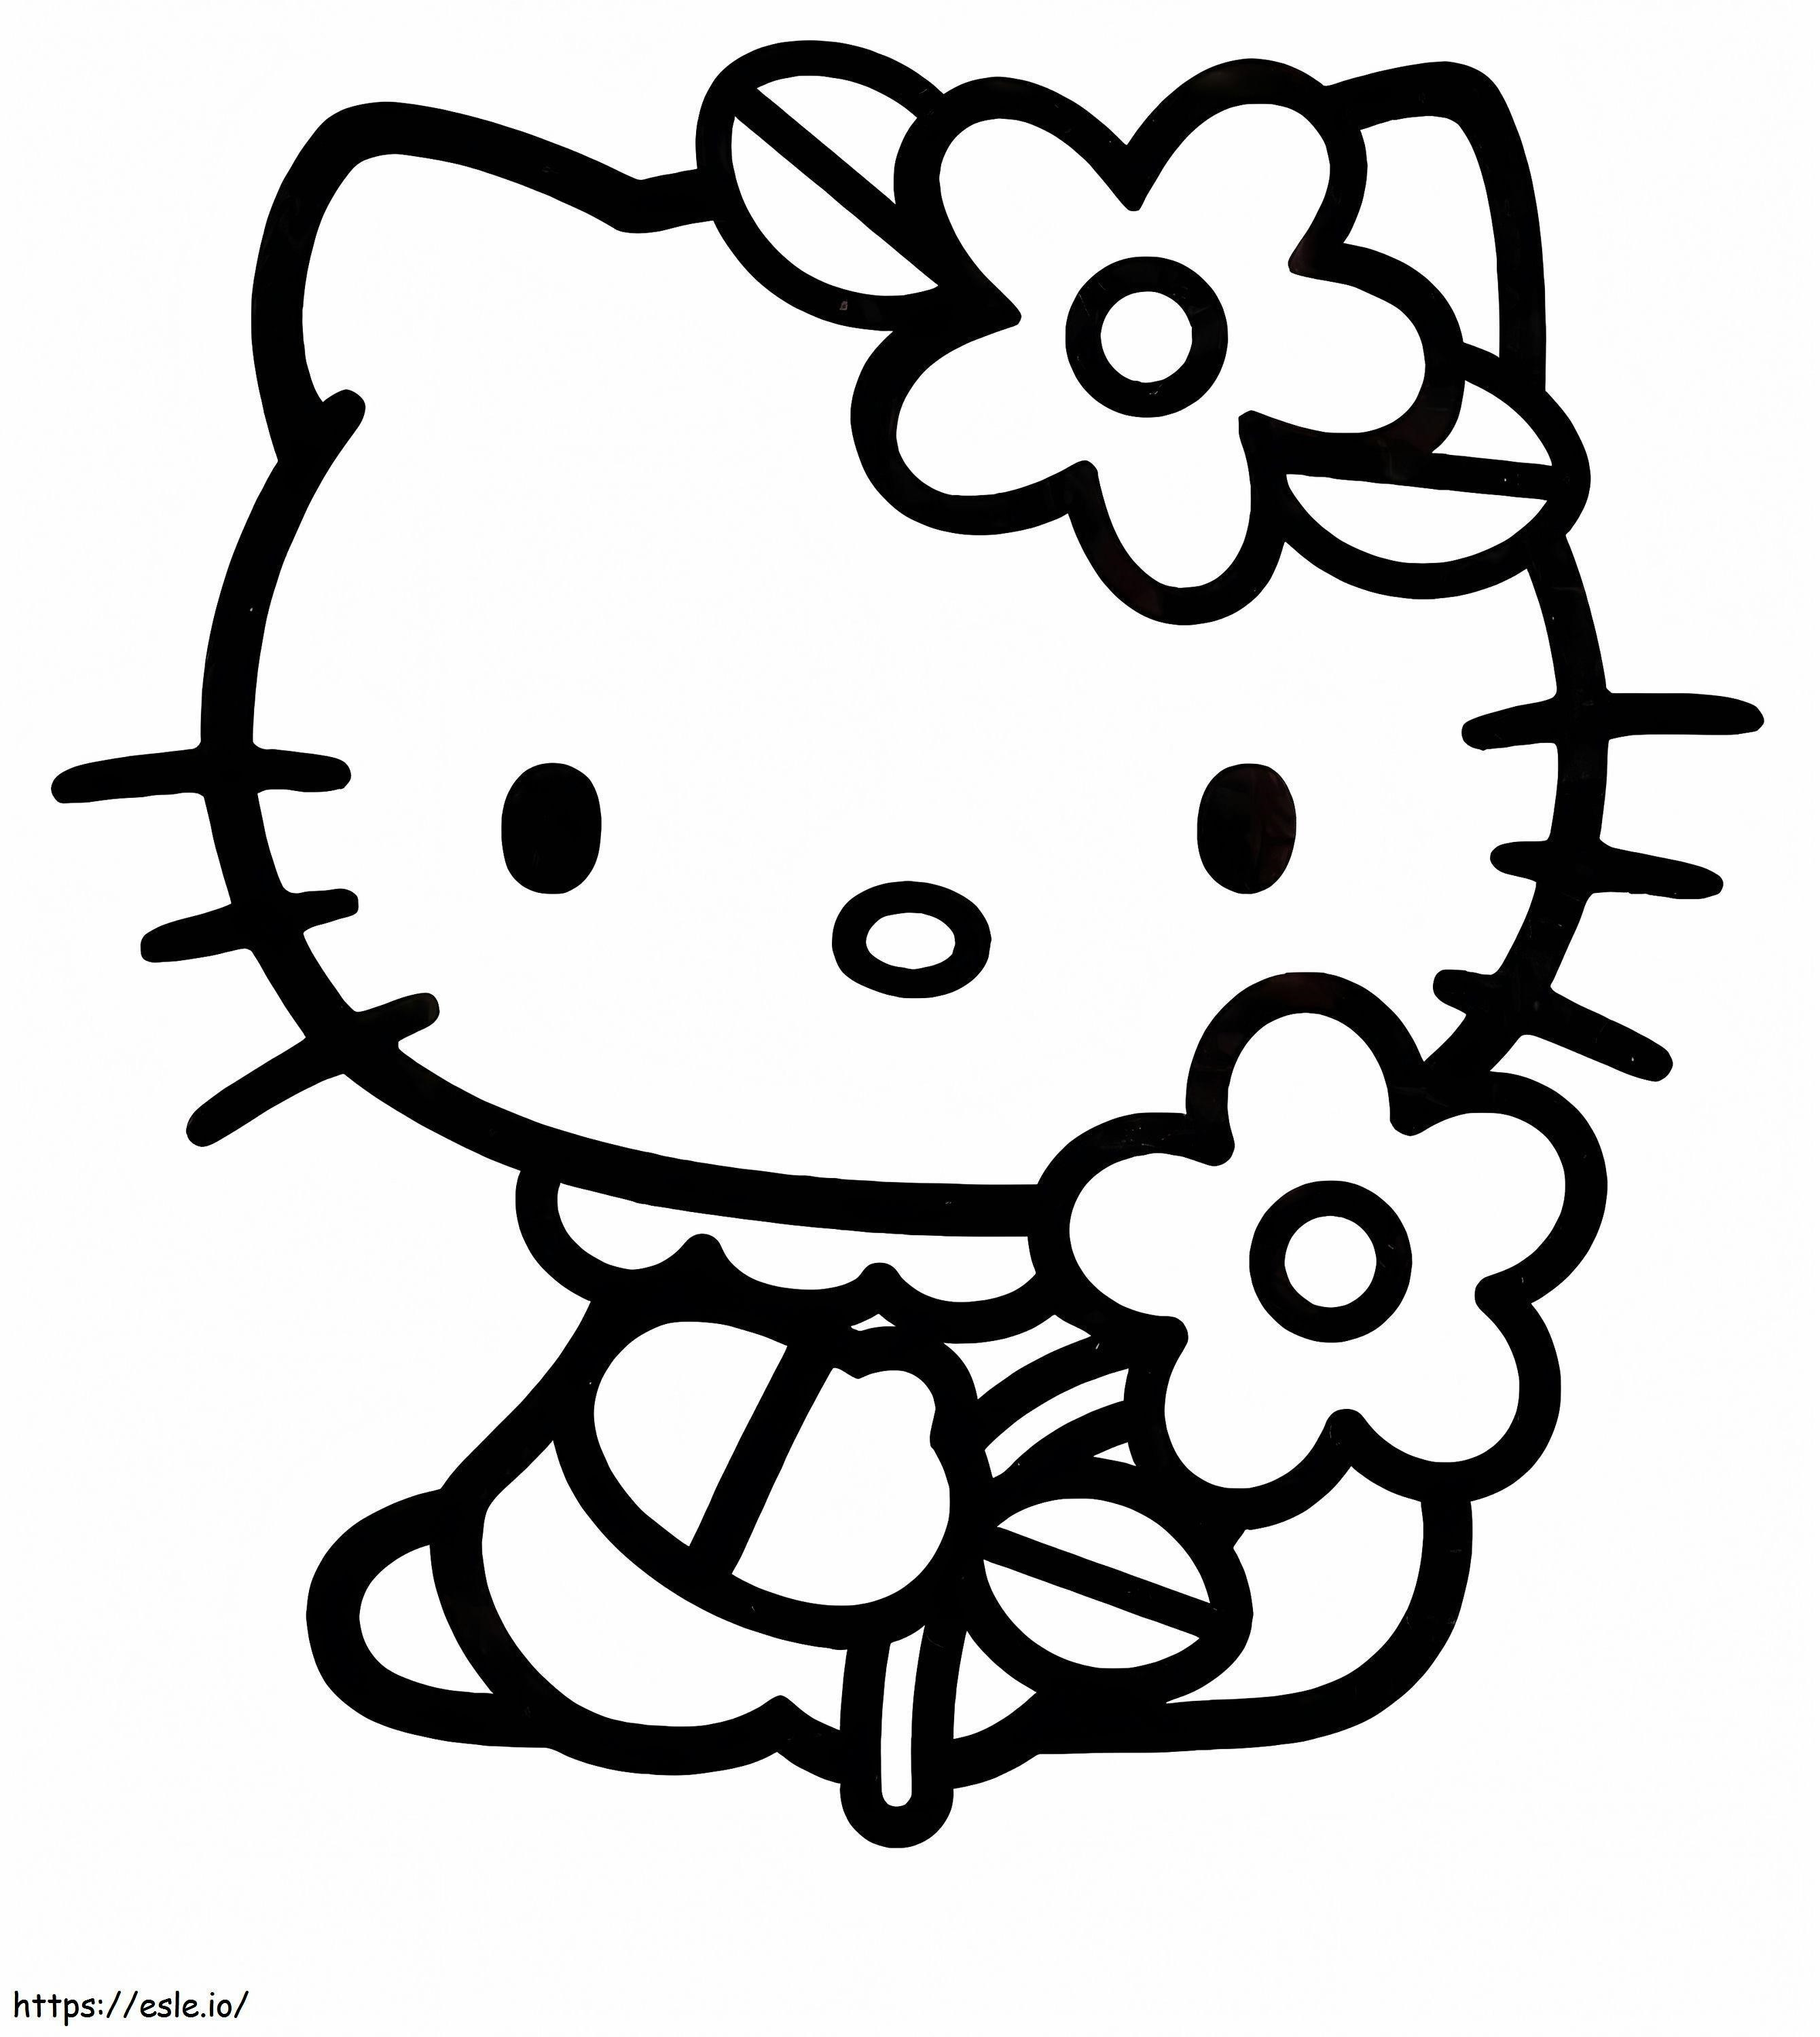 Fiore della holding di Hello Kitty da colorare